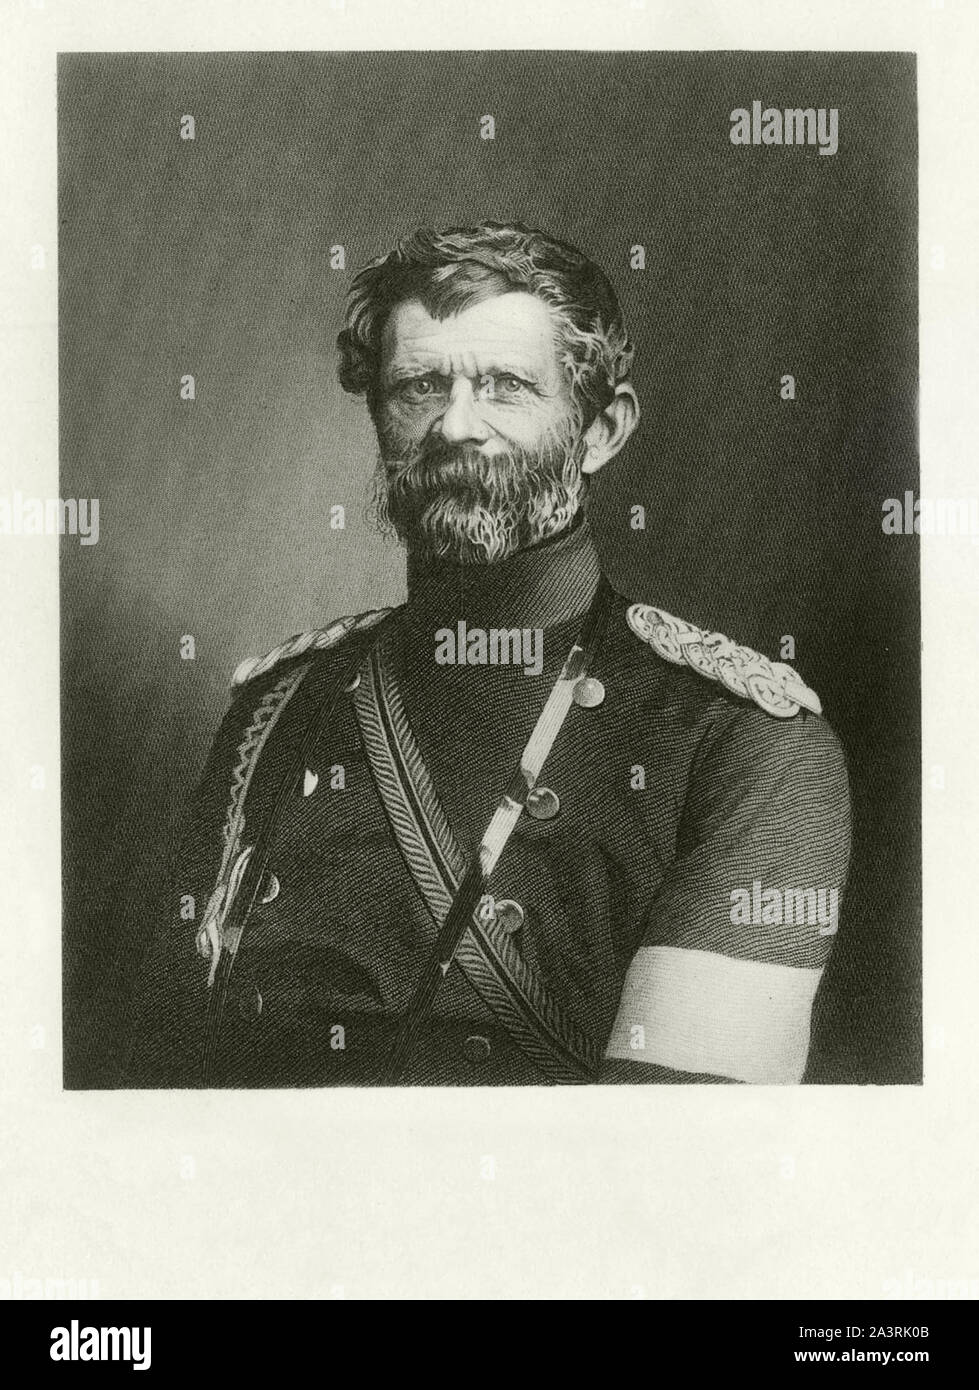 Edwin Karl Rochus Freiherr von Manteuffel (1809 - 1885) war ein preußischer Generalfeldmarschall, bekannt für seine Siege im Deutsch-Französischen Krieg. Stockfoto